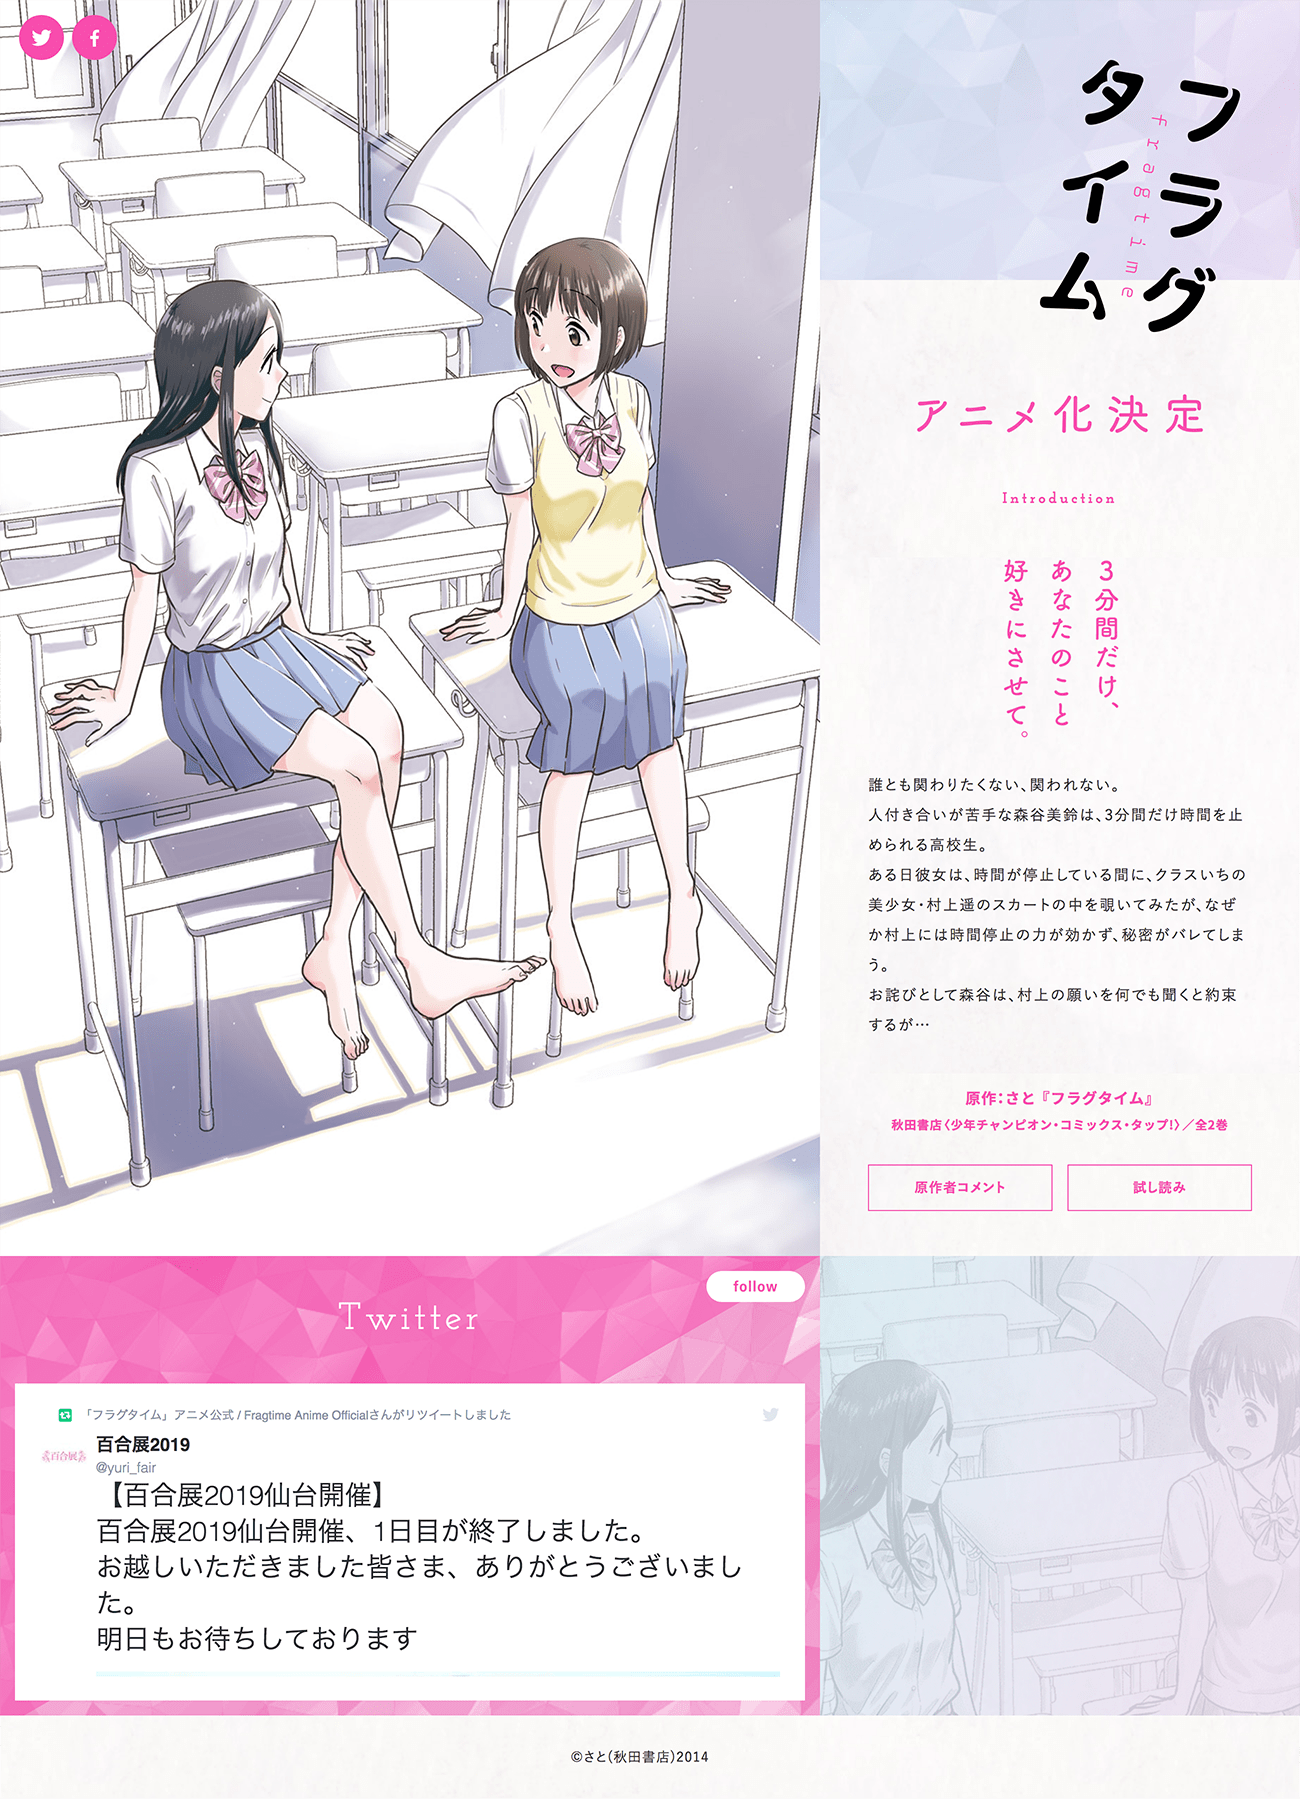 フラグタイム アニメ公式サイト Iro 2 Bookmark アニメウェブ